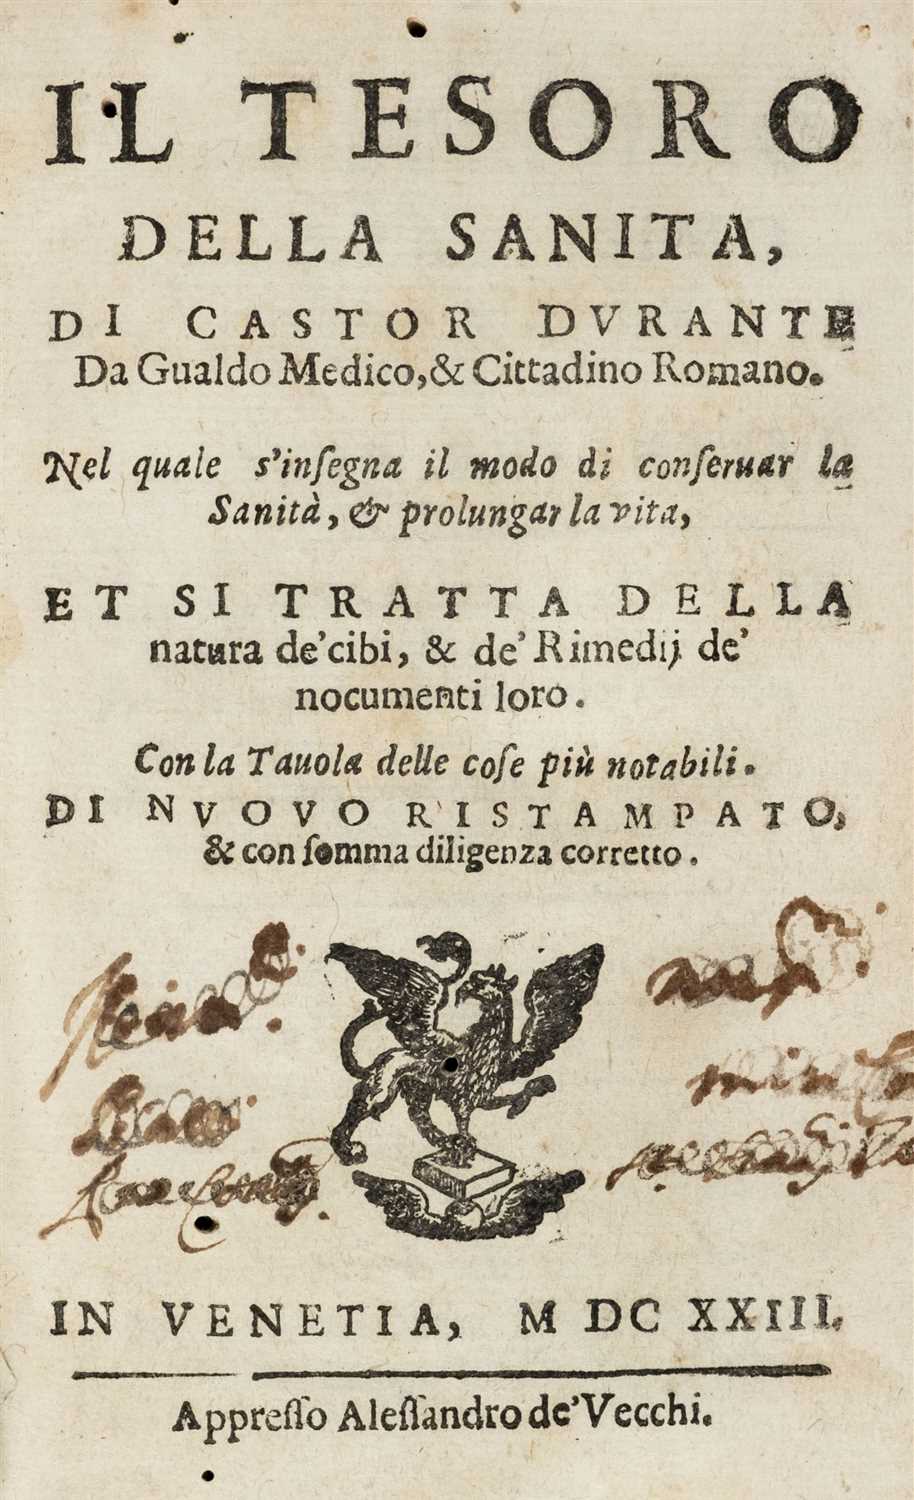 Lot 305 - Durante (Castore). Il Tesoro della Sanita, Venice, 1623